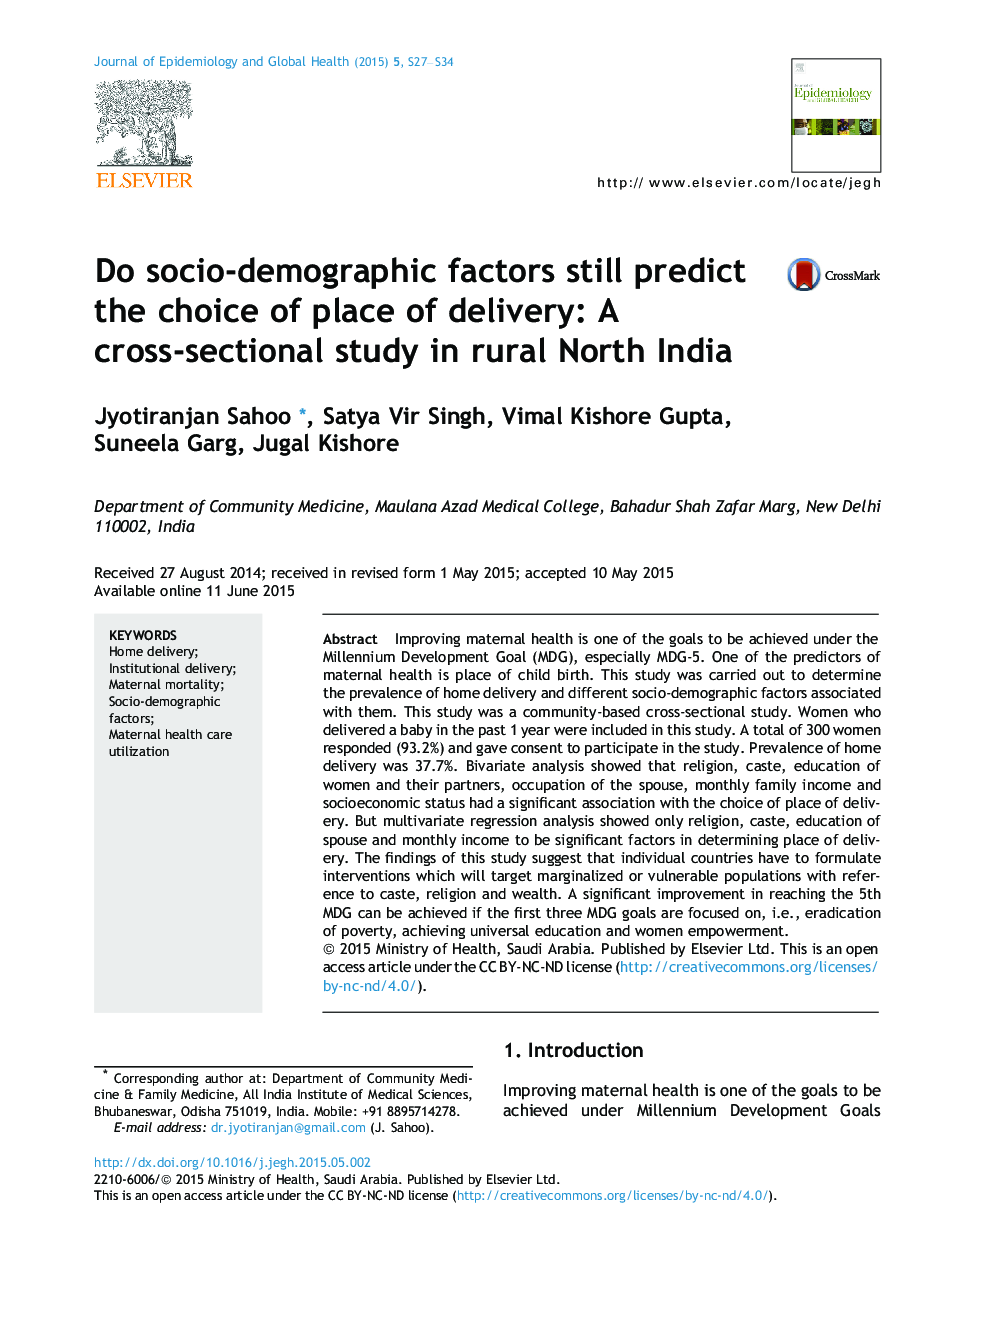 آیا عوامل اجتماعی-دموگرافیک هنوز هم انتخاب محل زایمان را پیش بینی می کنند: یک مطالعه مقطعی در شمال هند روستایی 